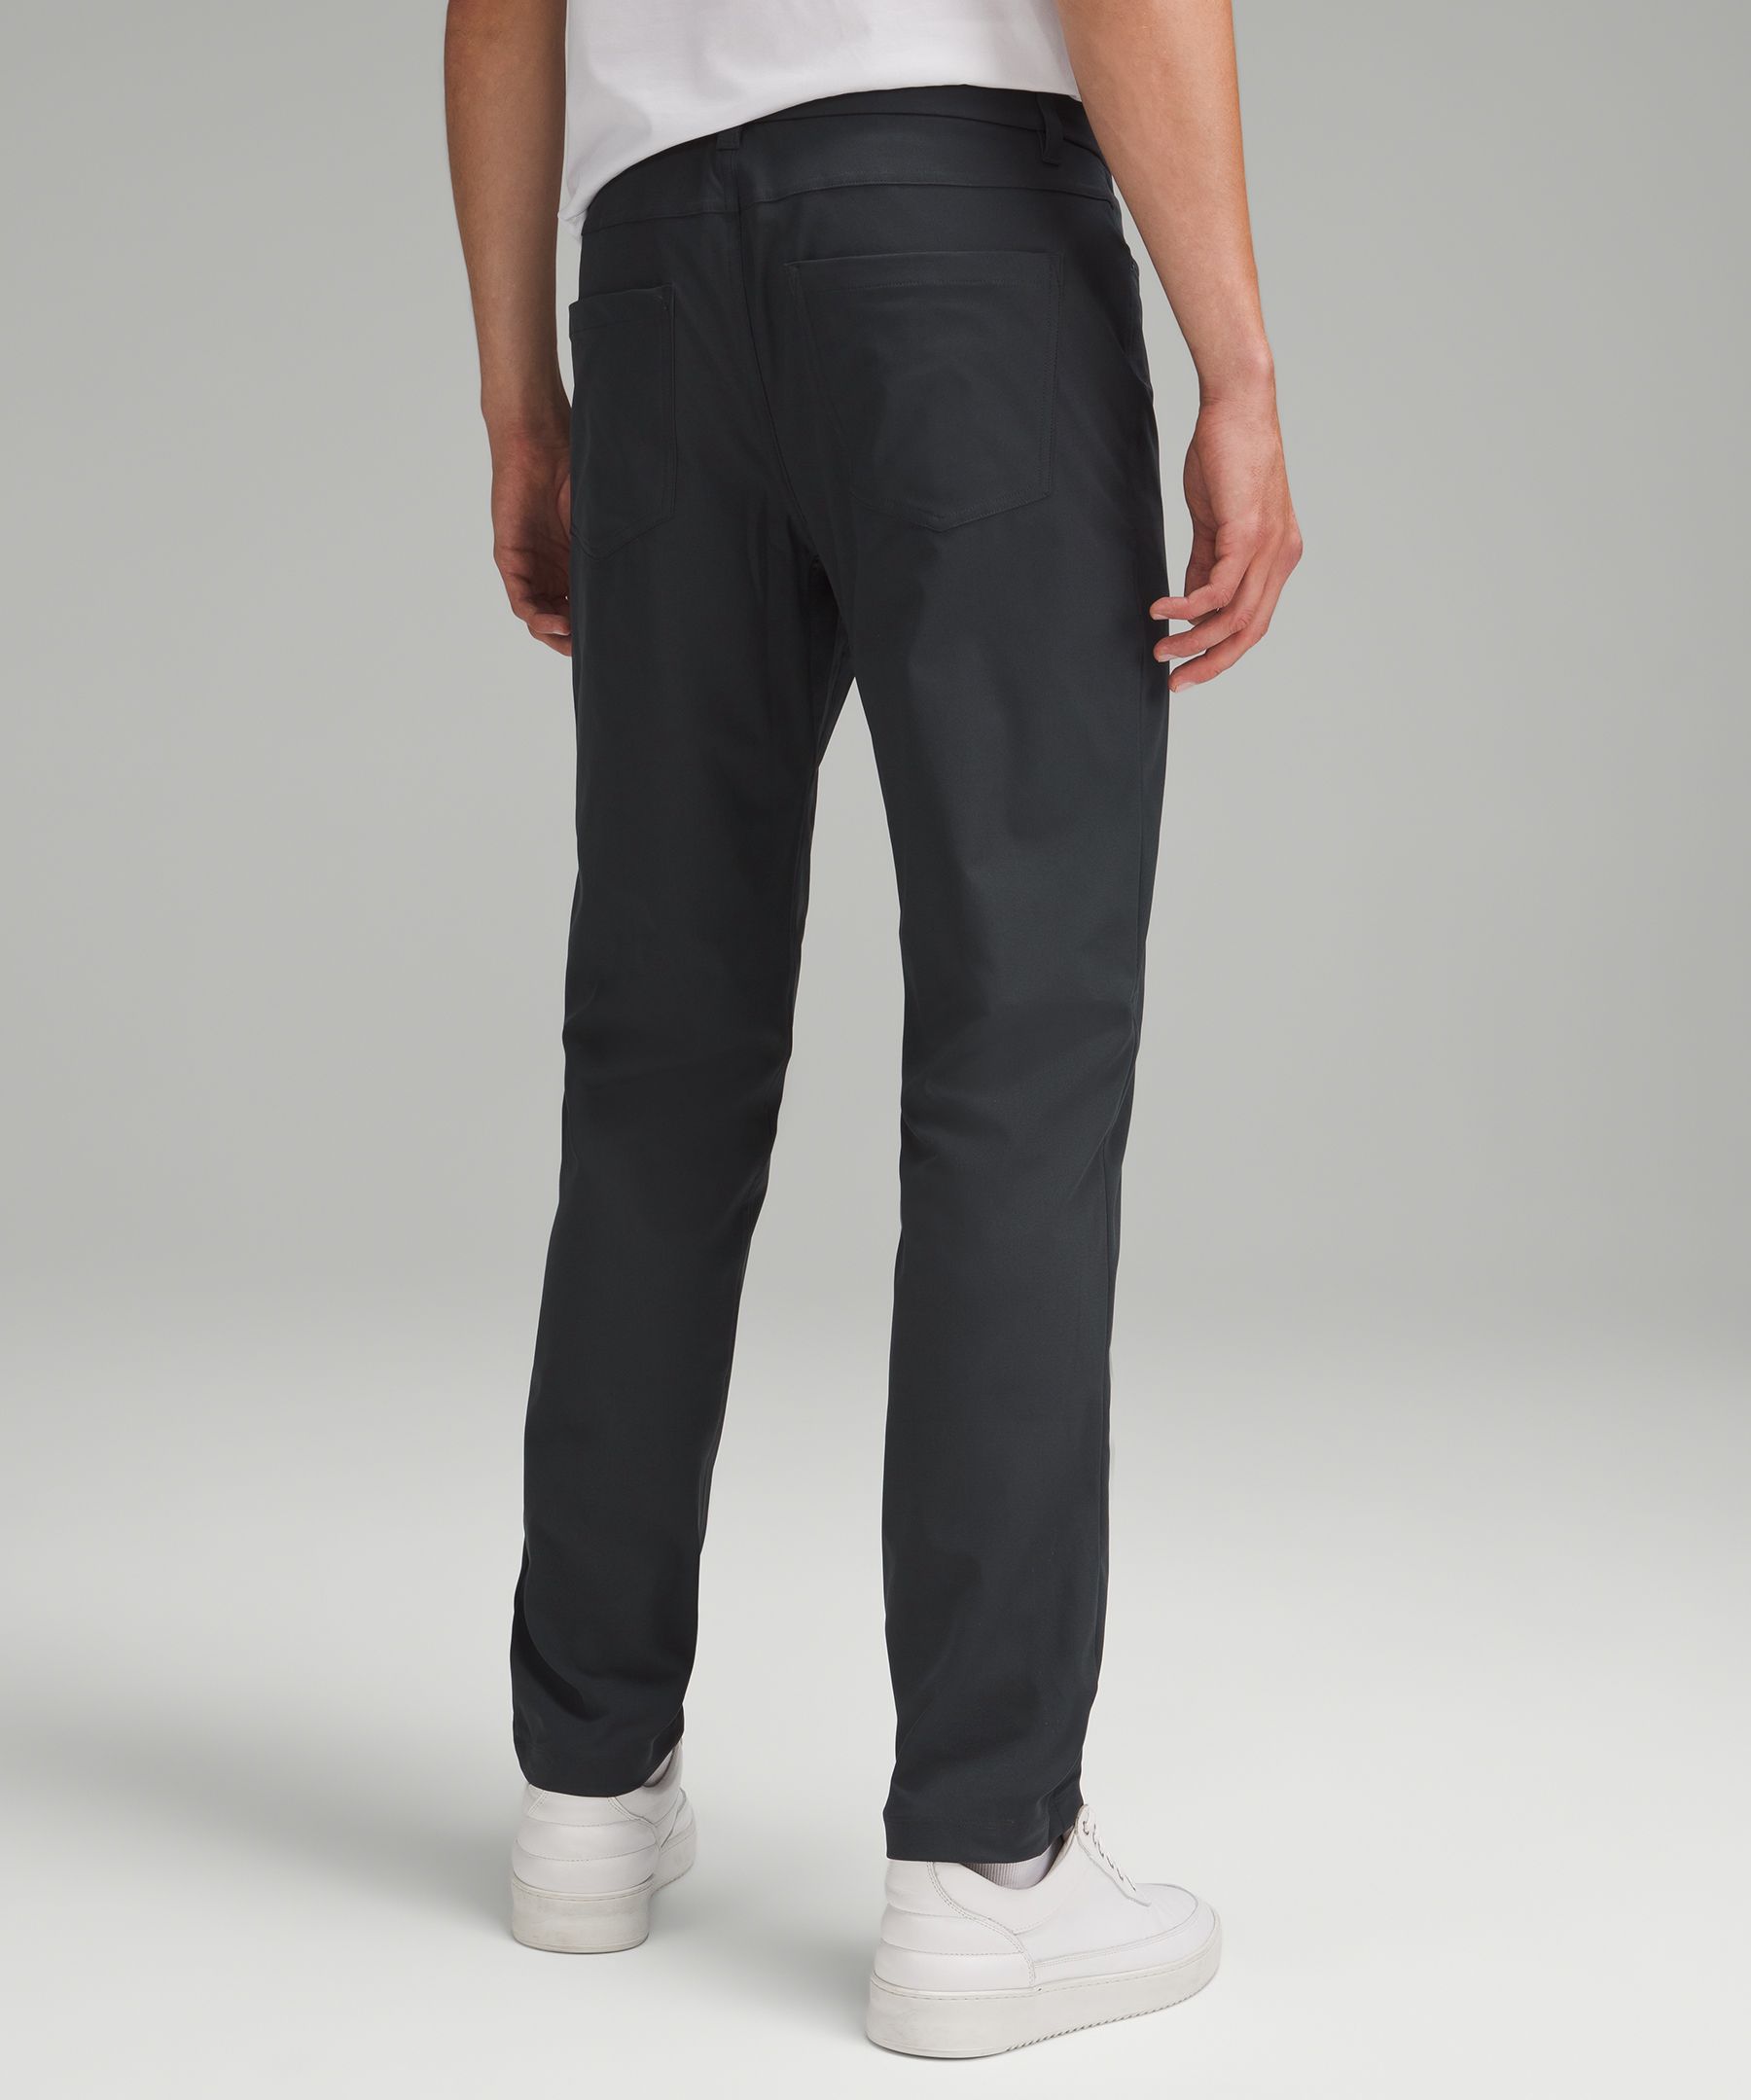 ABC Slim-Fit 5 Pocket Pant 28L *Warpstreme, Men's Trousers